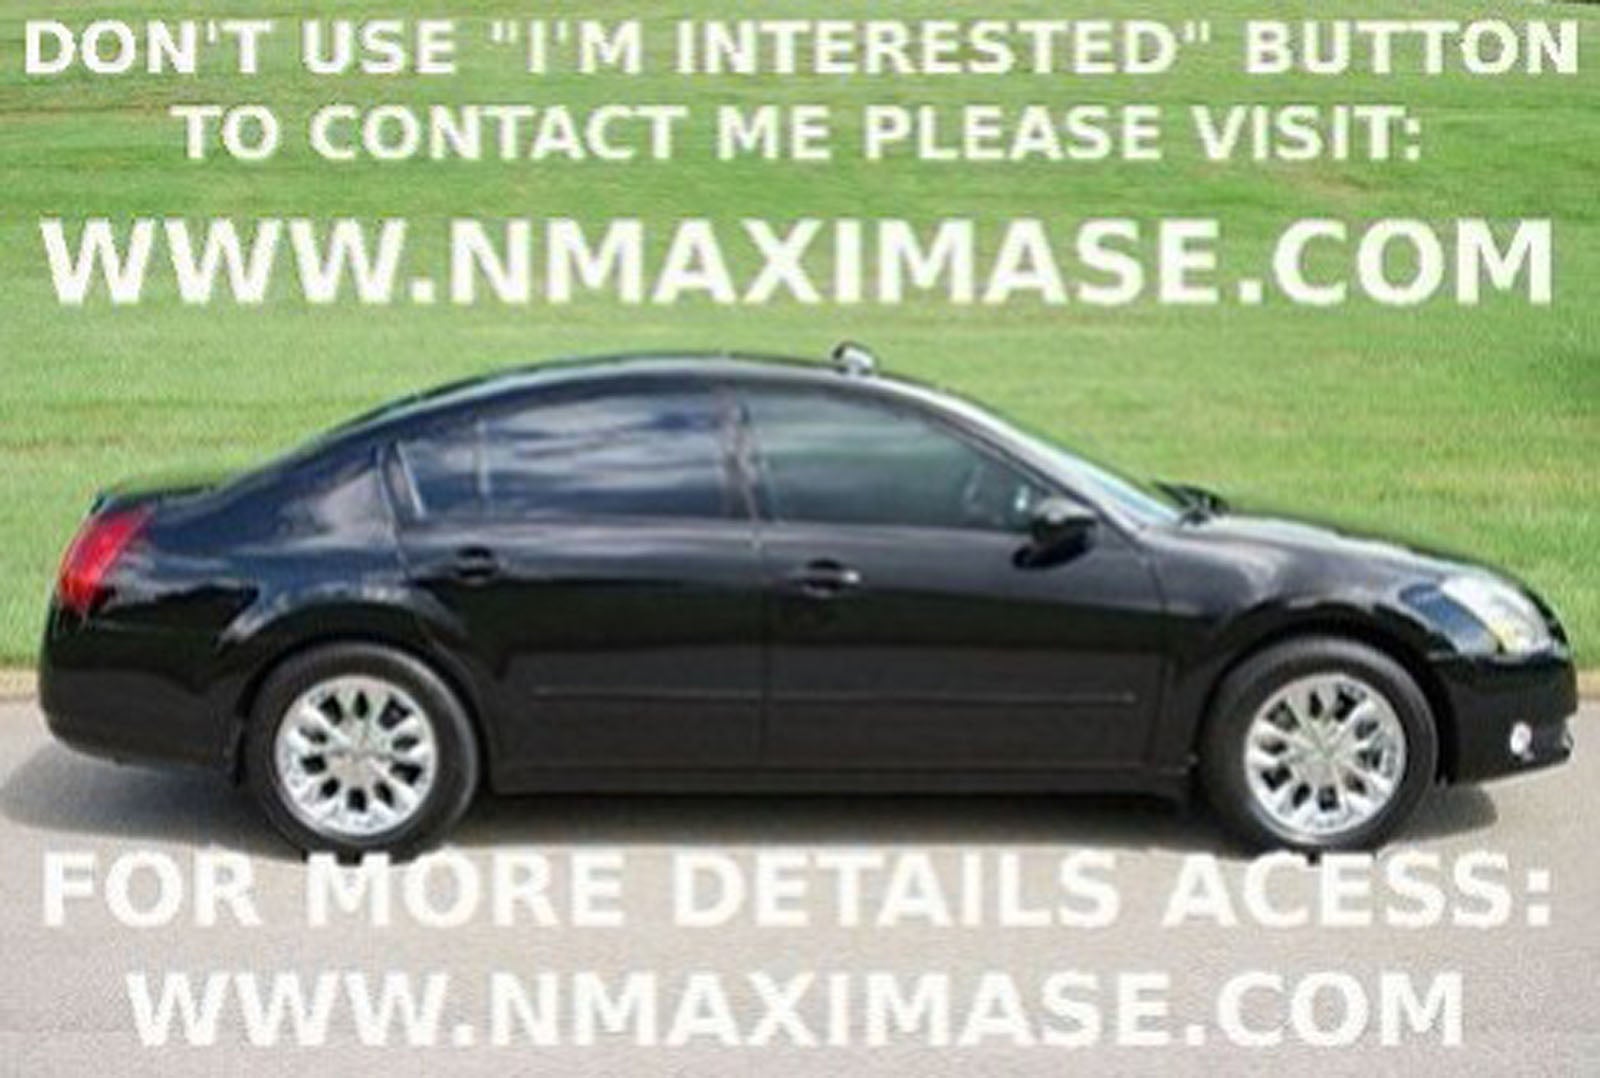 Nissan maxima's for sale boston ma #6